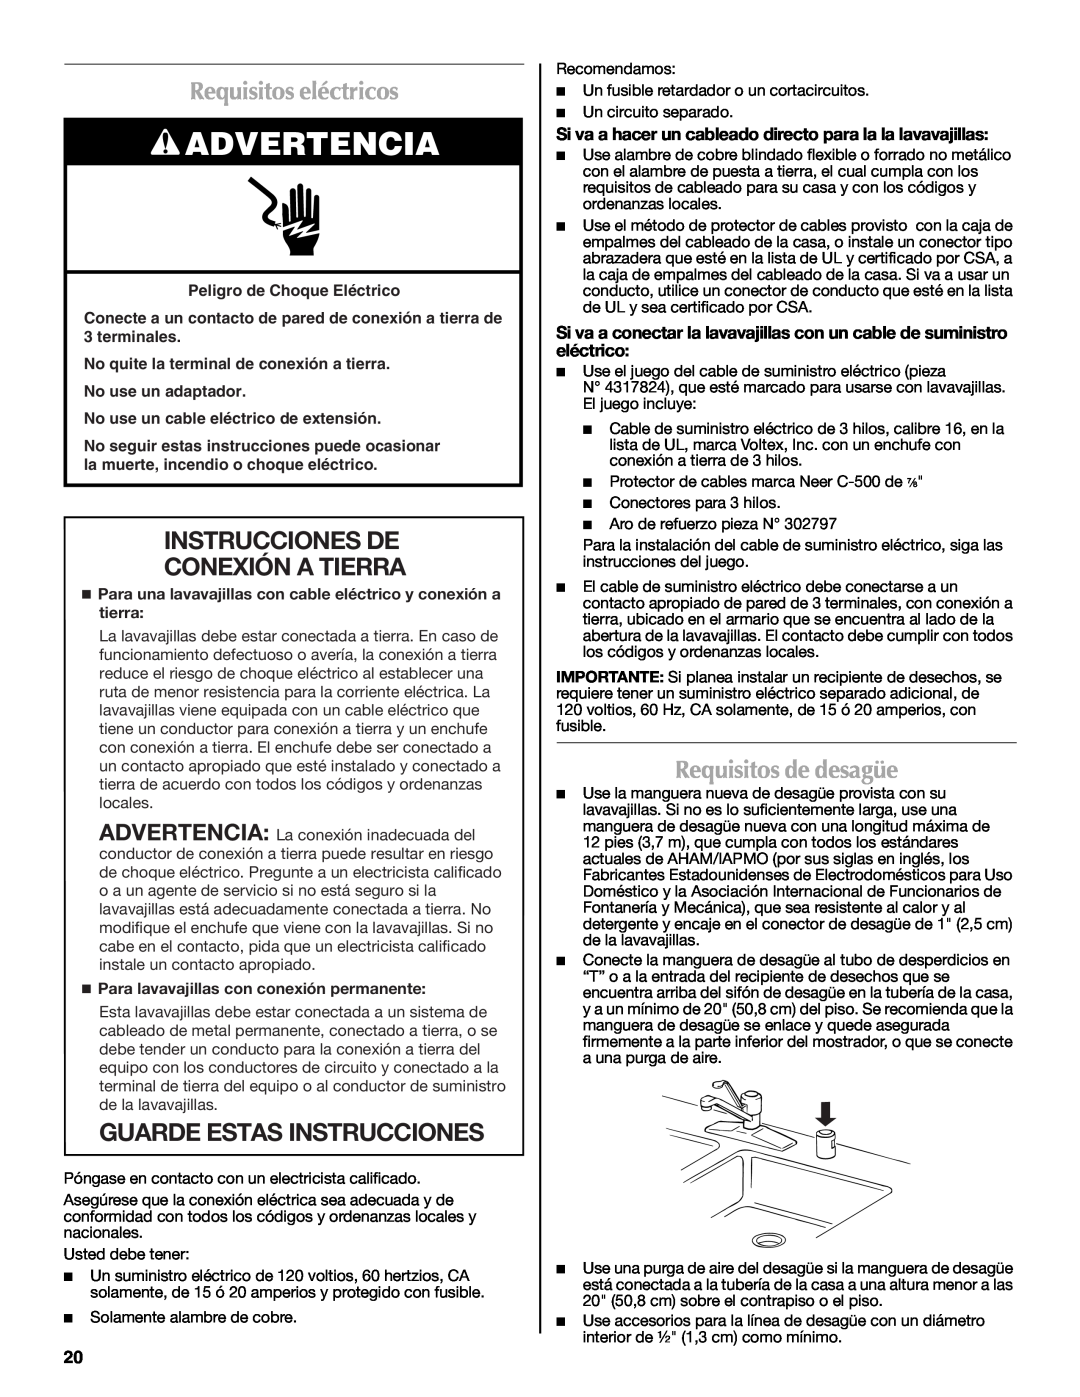 Maytag W10300218A Requisitos eléctricos, Instrucciones De Conexión A Tierra, Guarde Estas Instrucciones, Advertencia 